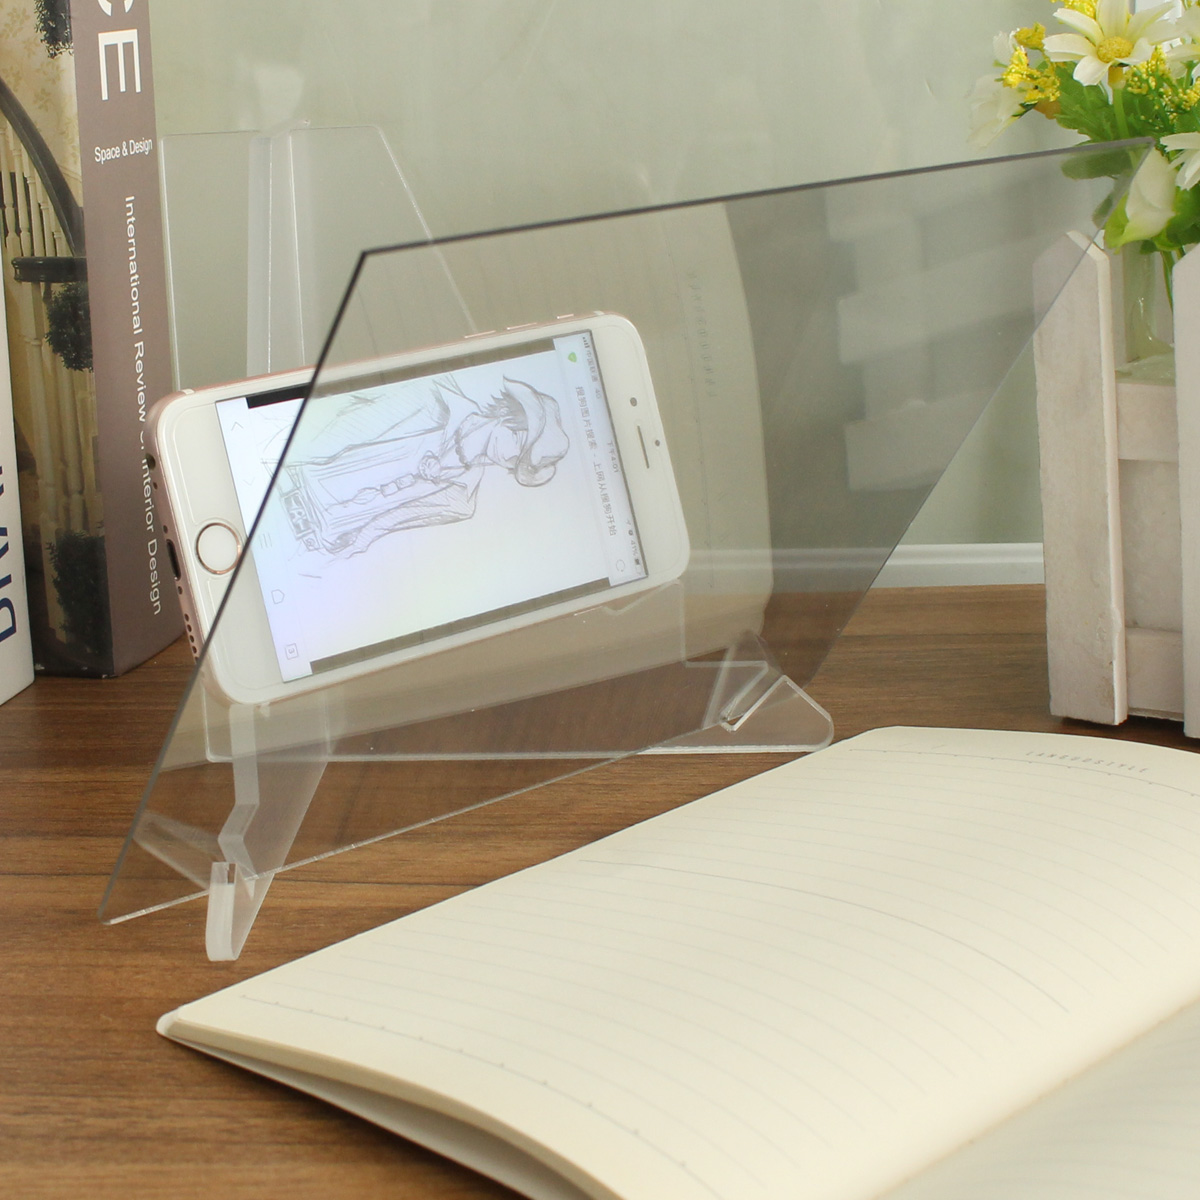 

Чертежный планшет Настольный рисунок эскиза Линейная доска Отражение зеркал